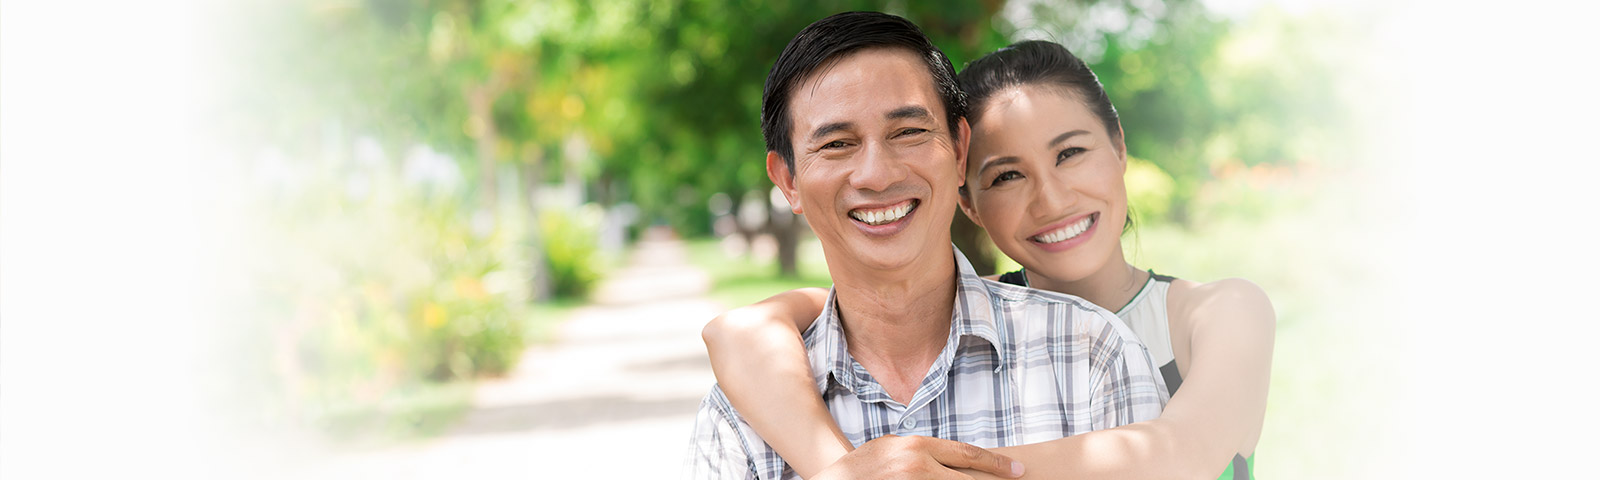 happy Vietnamese couple smiling